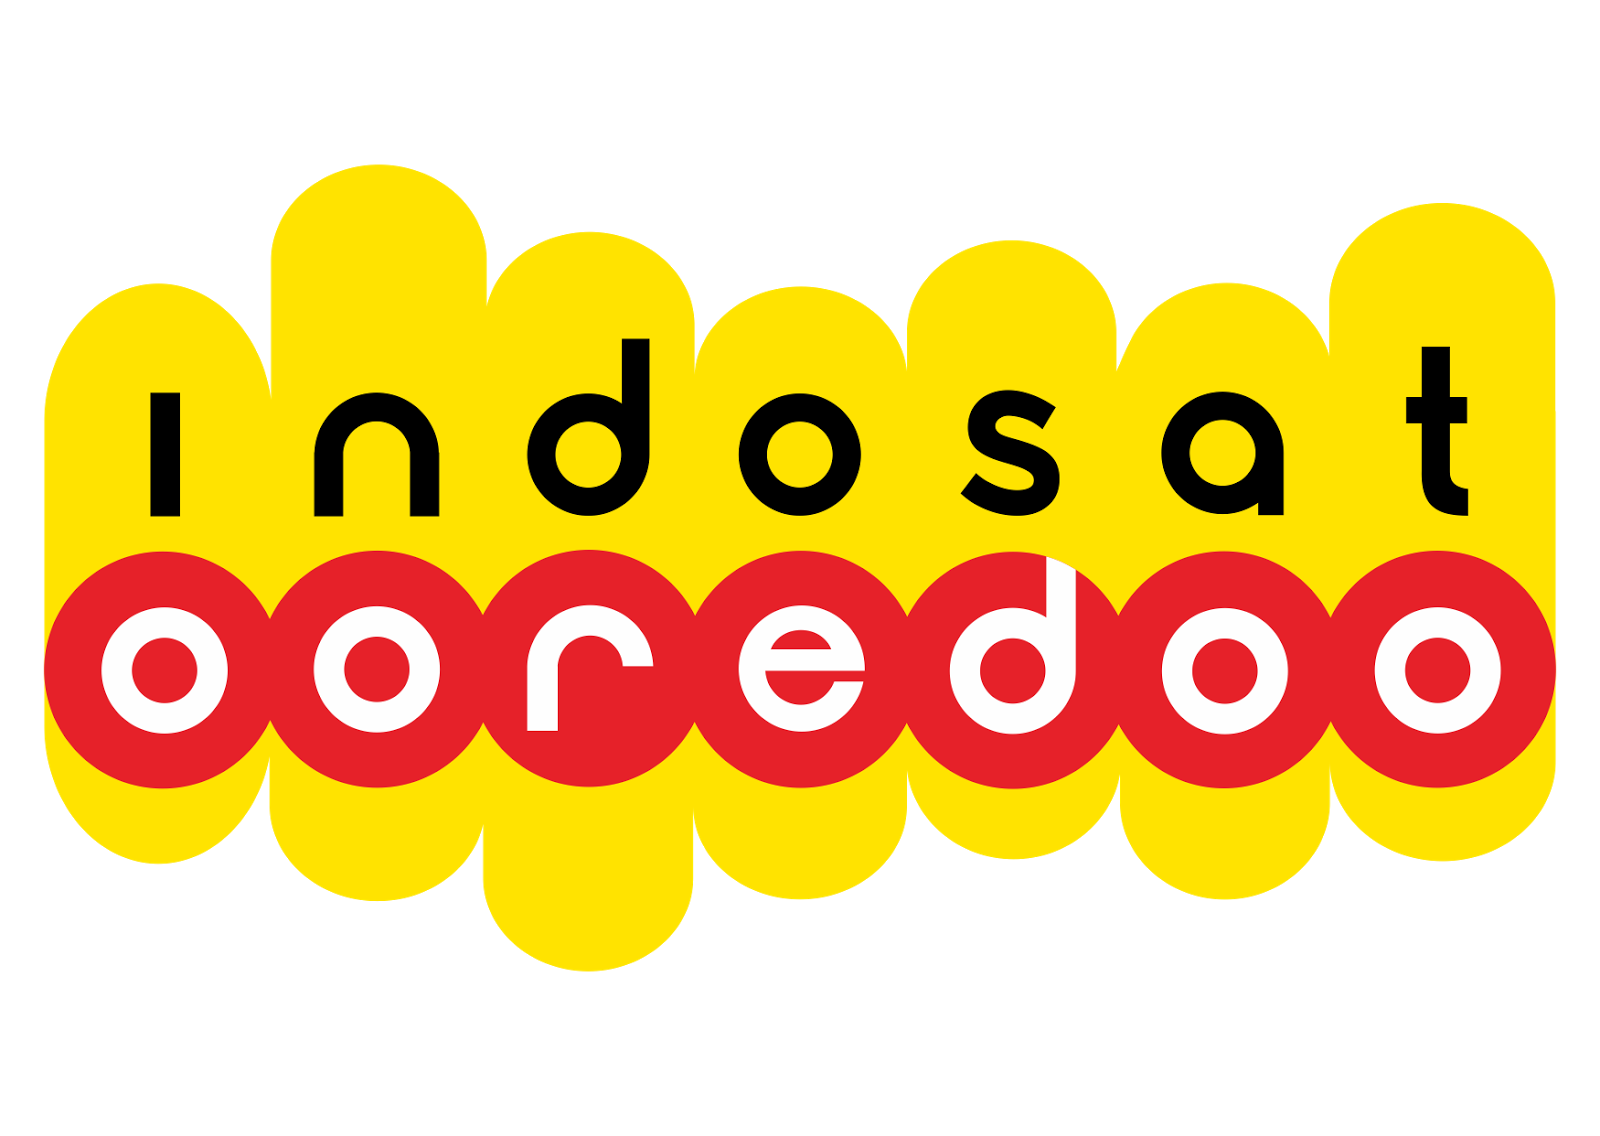 Indosat_Ooredoo_Vector_Logo